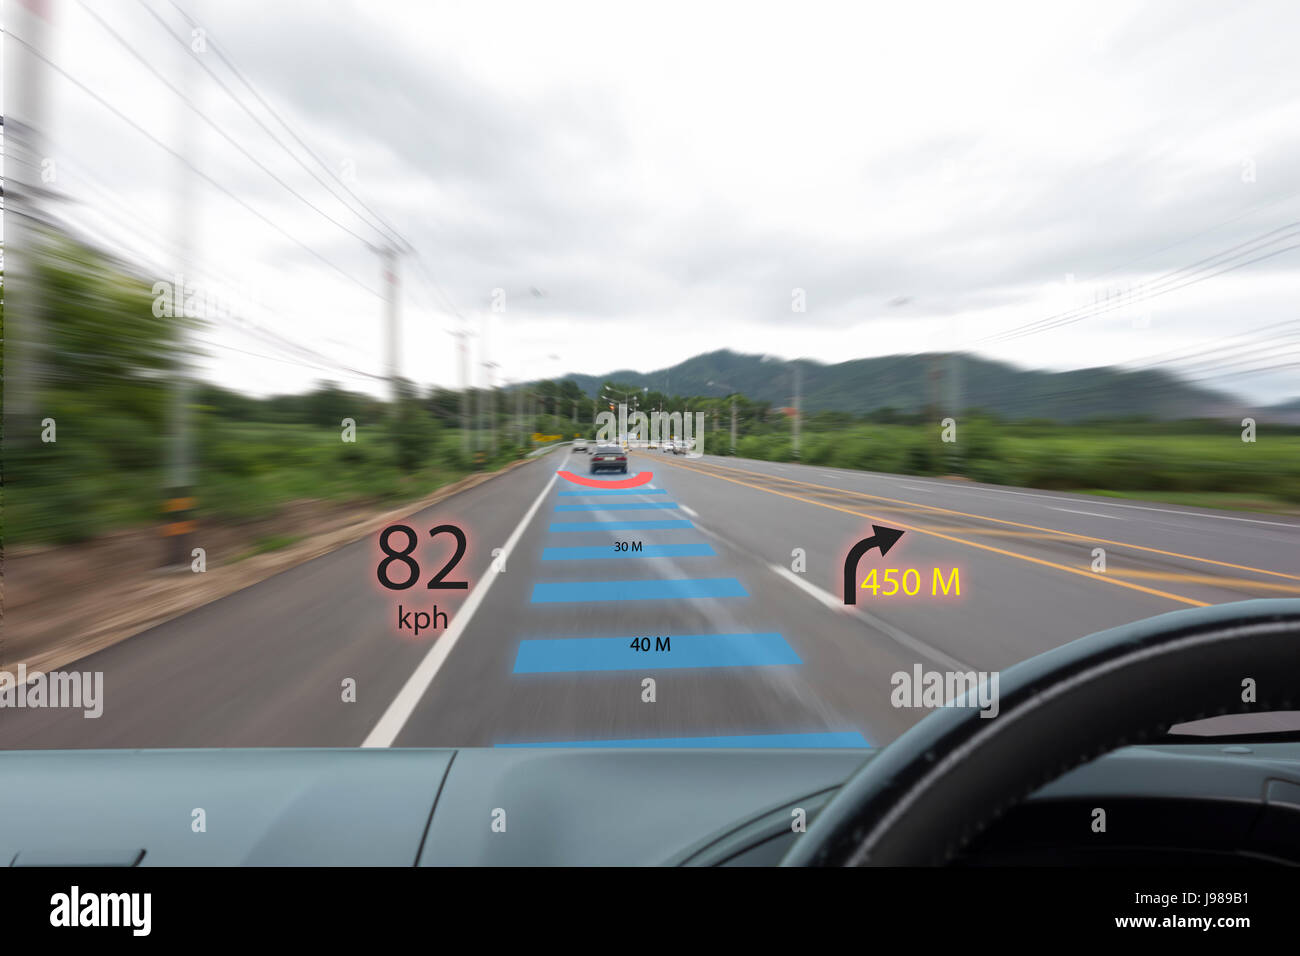 https://c8.alamy.com/compit/j989b1/iot-internet-delle-cose-di-smart-car-concetti-head-up-display-hud-auto-utilizza-la-realta-aumentata-per-mostrare-la-velocita-navigazione-la-distanza-tra-la-c-j989b1.jpg